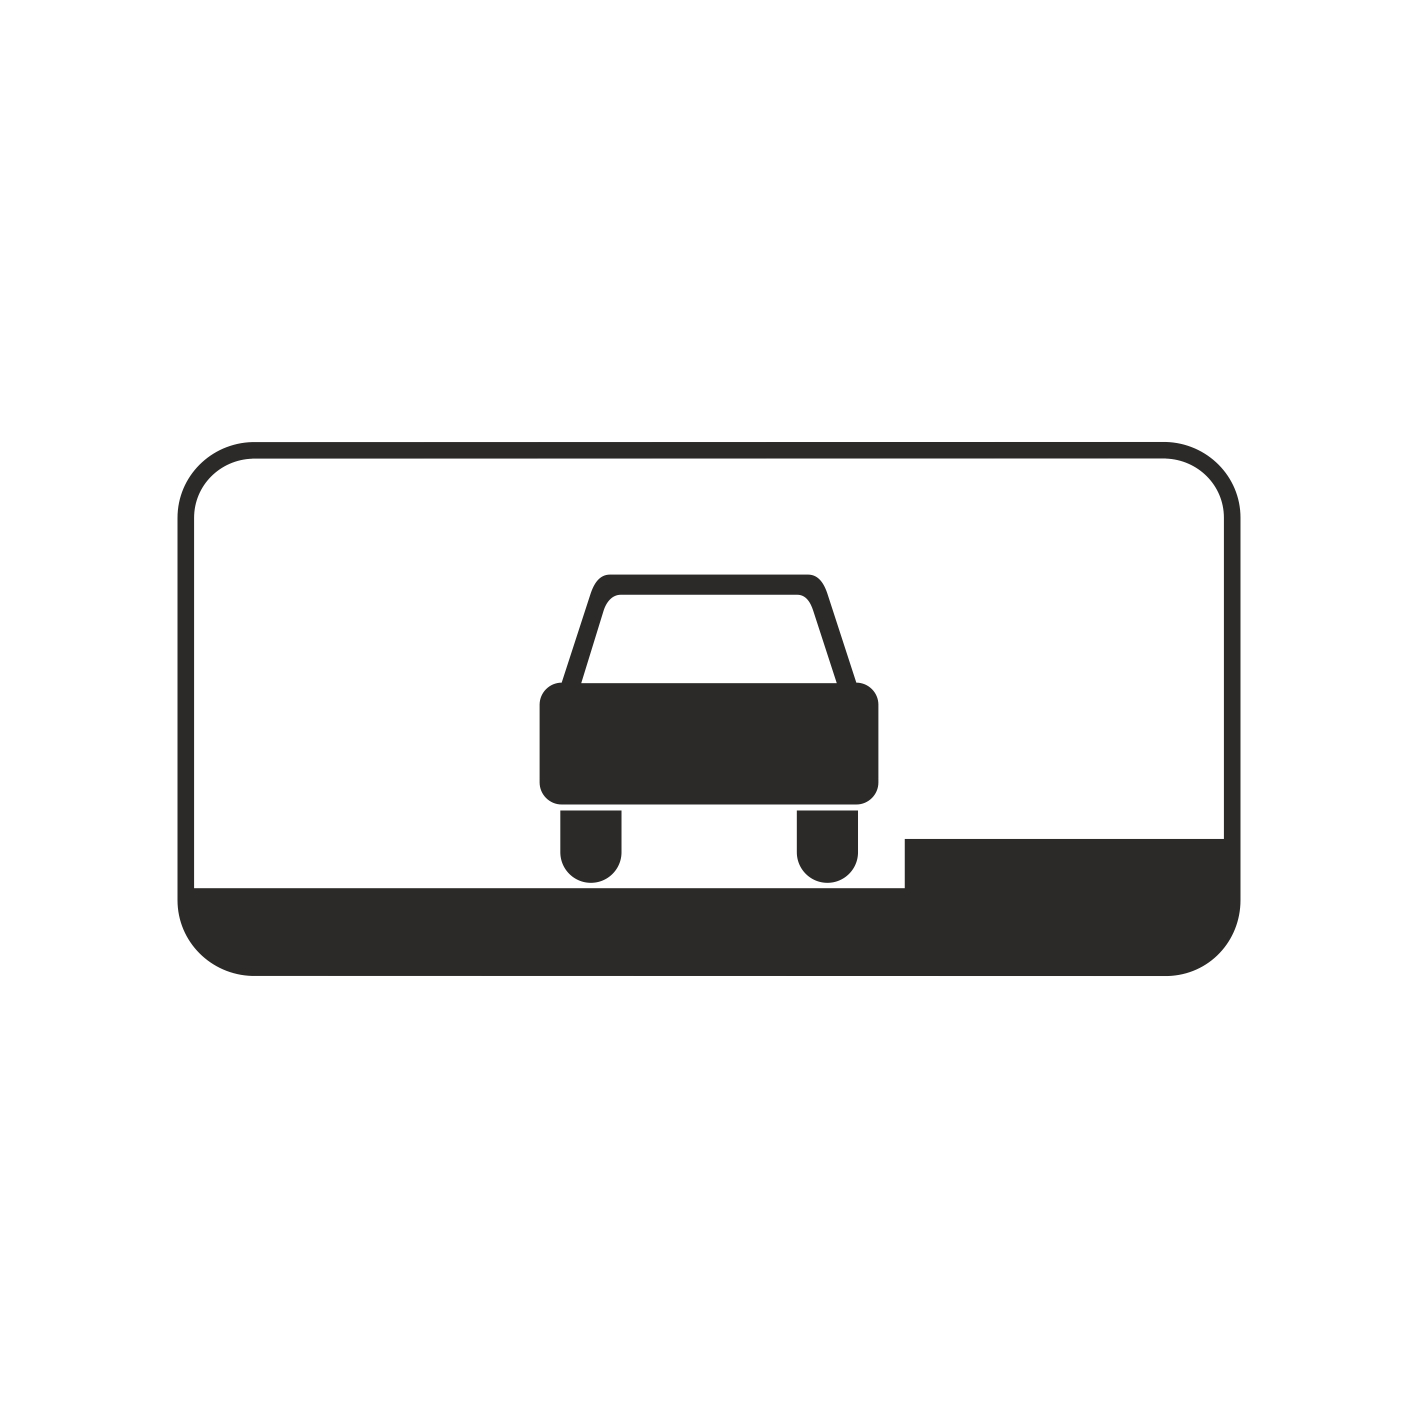 Знак 8.6.1 способ постановки транспортного средства на стоянку